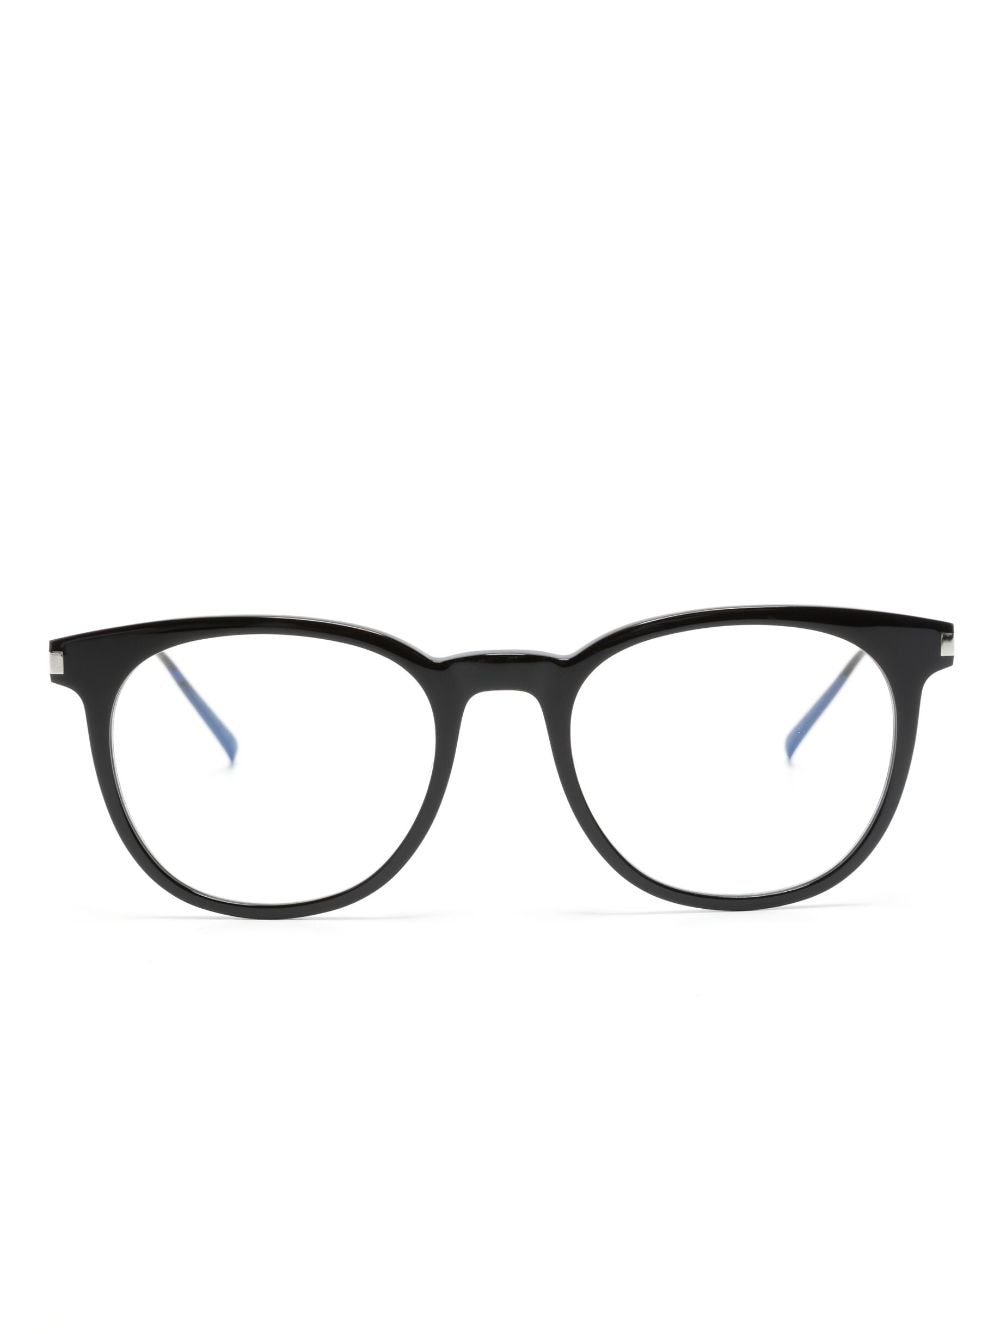 Saint Laurent Eyewear Brille mit rundem Gestell - Schwarz von Saint Laurent Eyewear